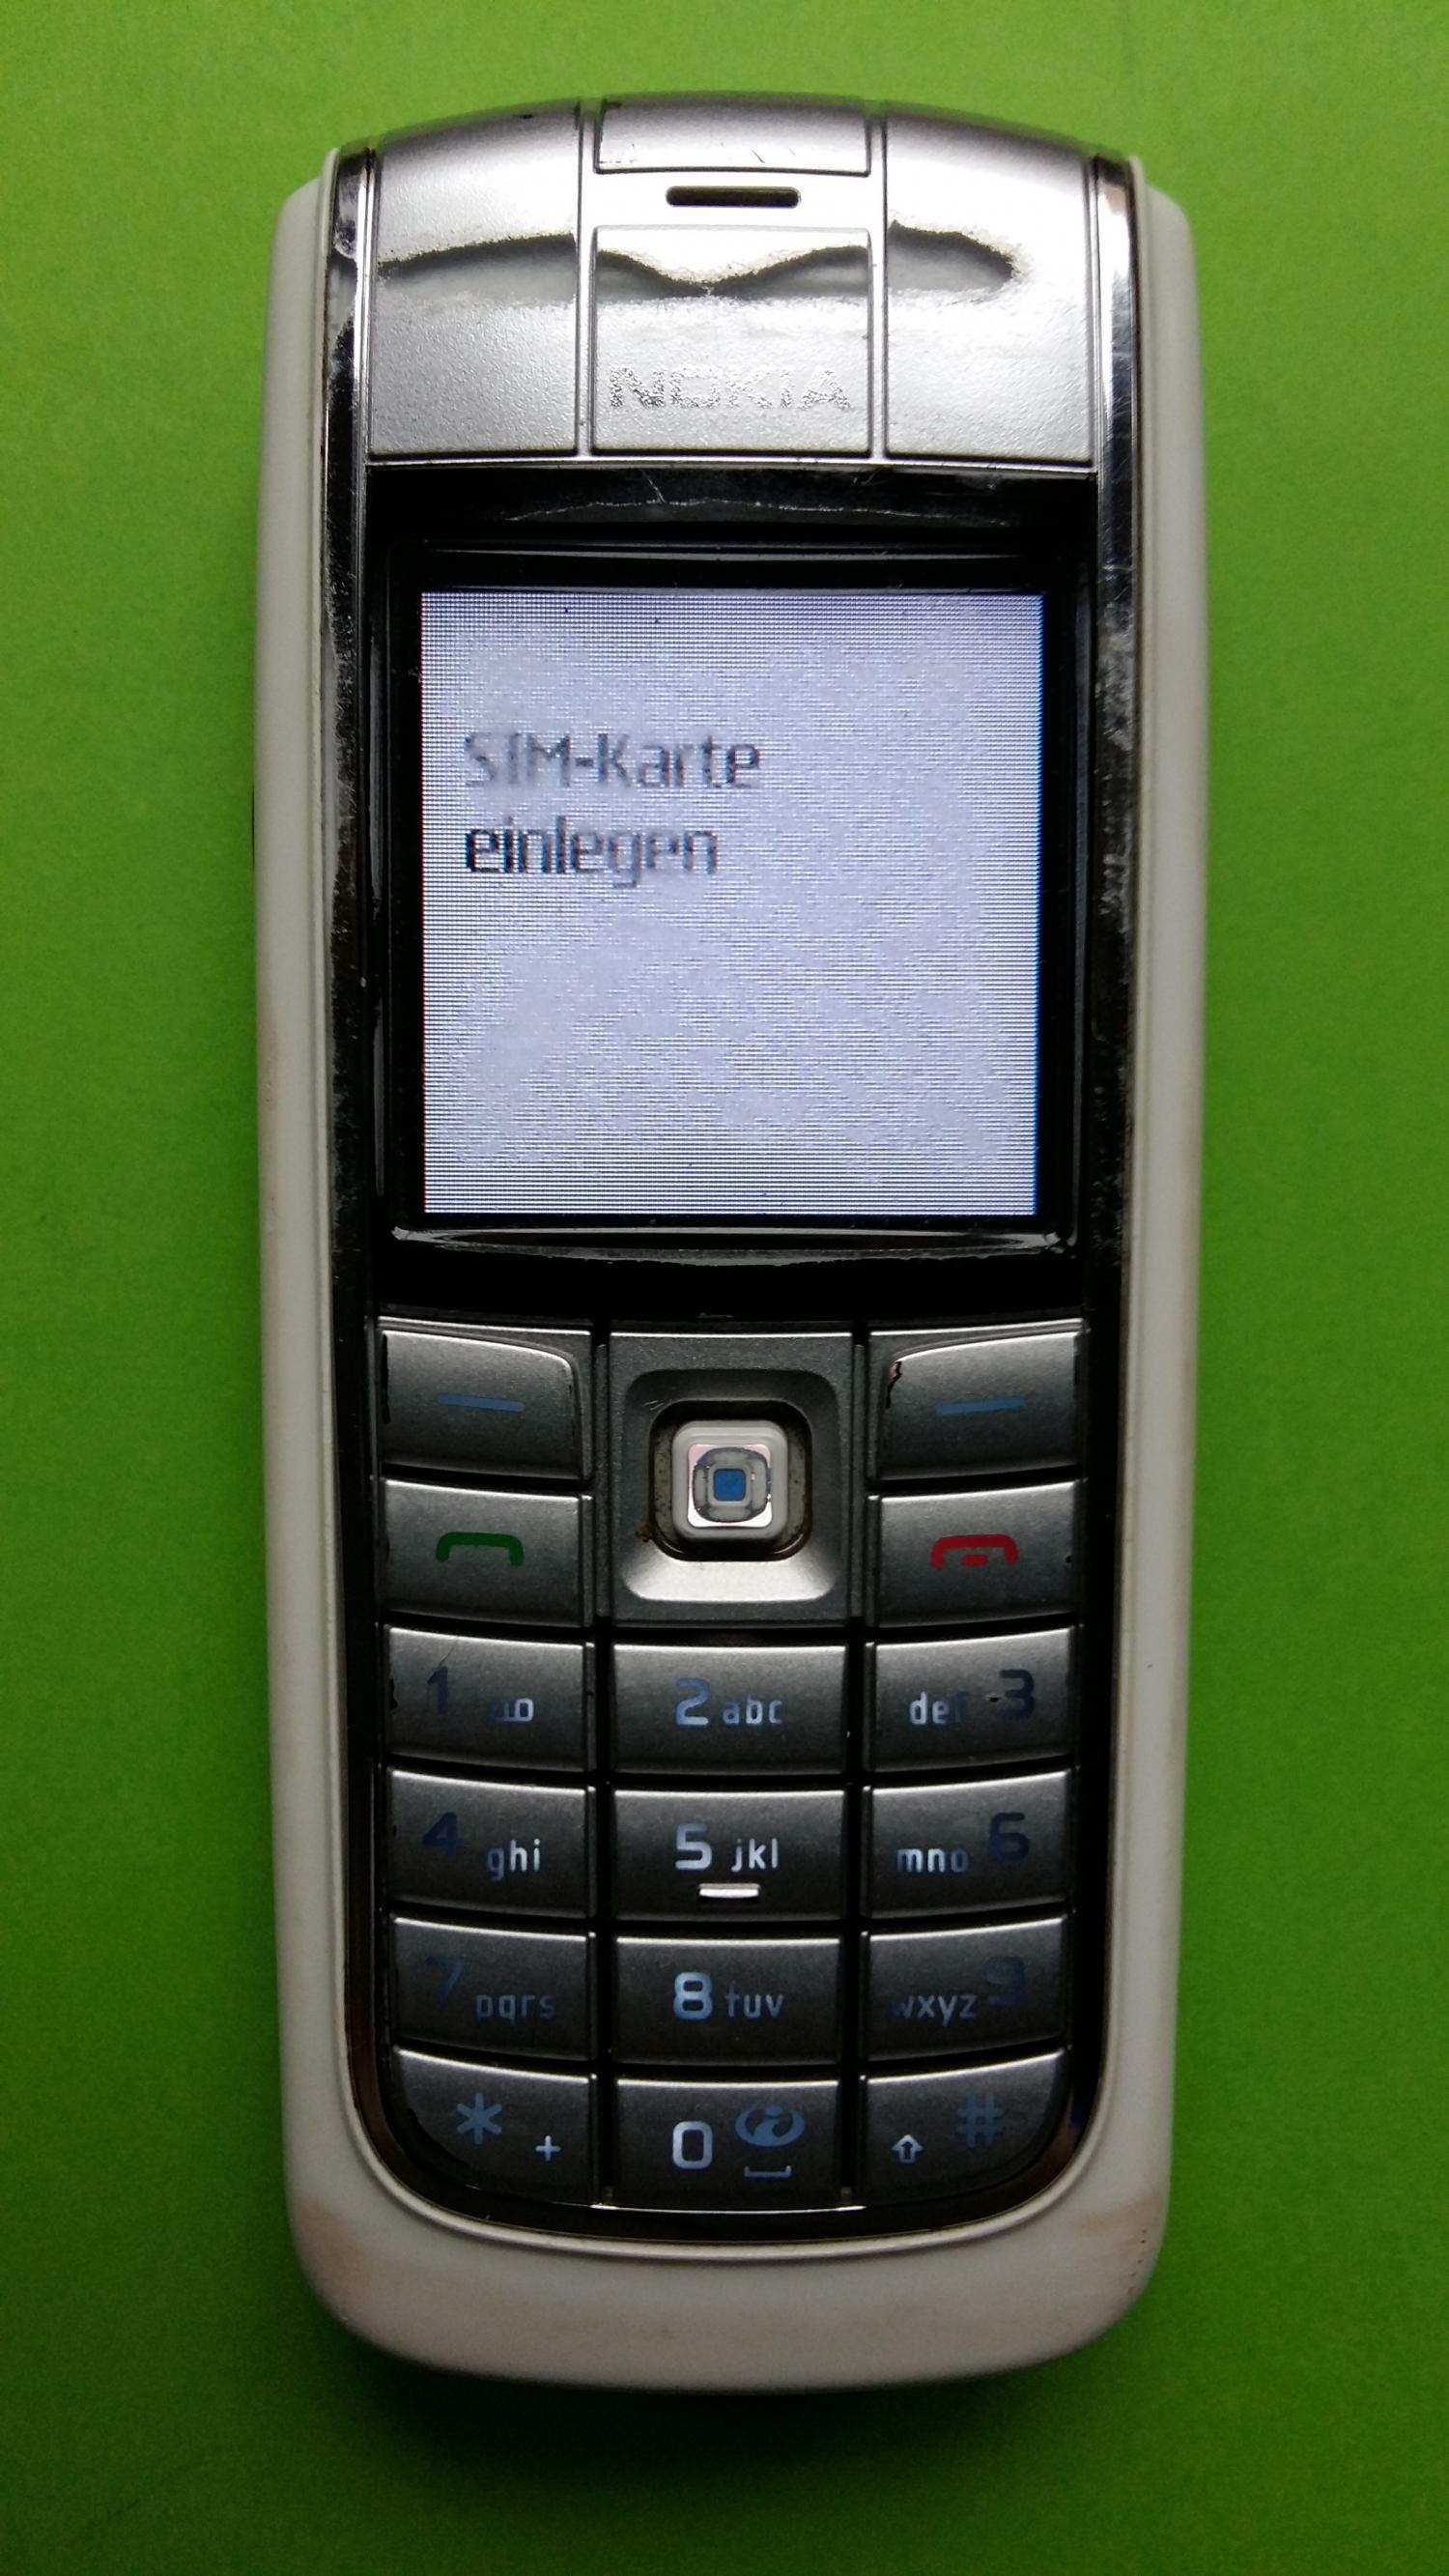 image-7307051-Nokia 6020 (3)1.jpg